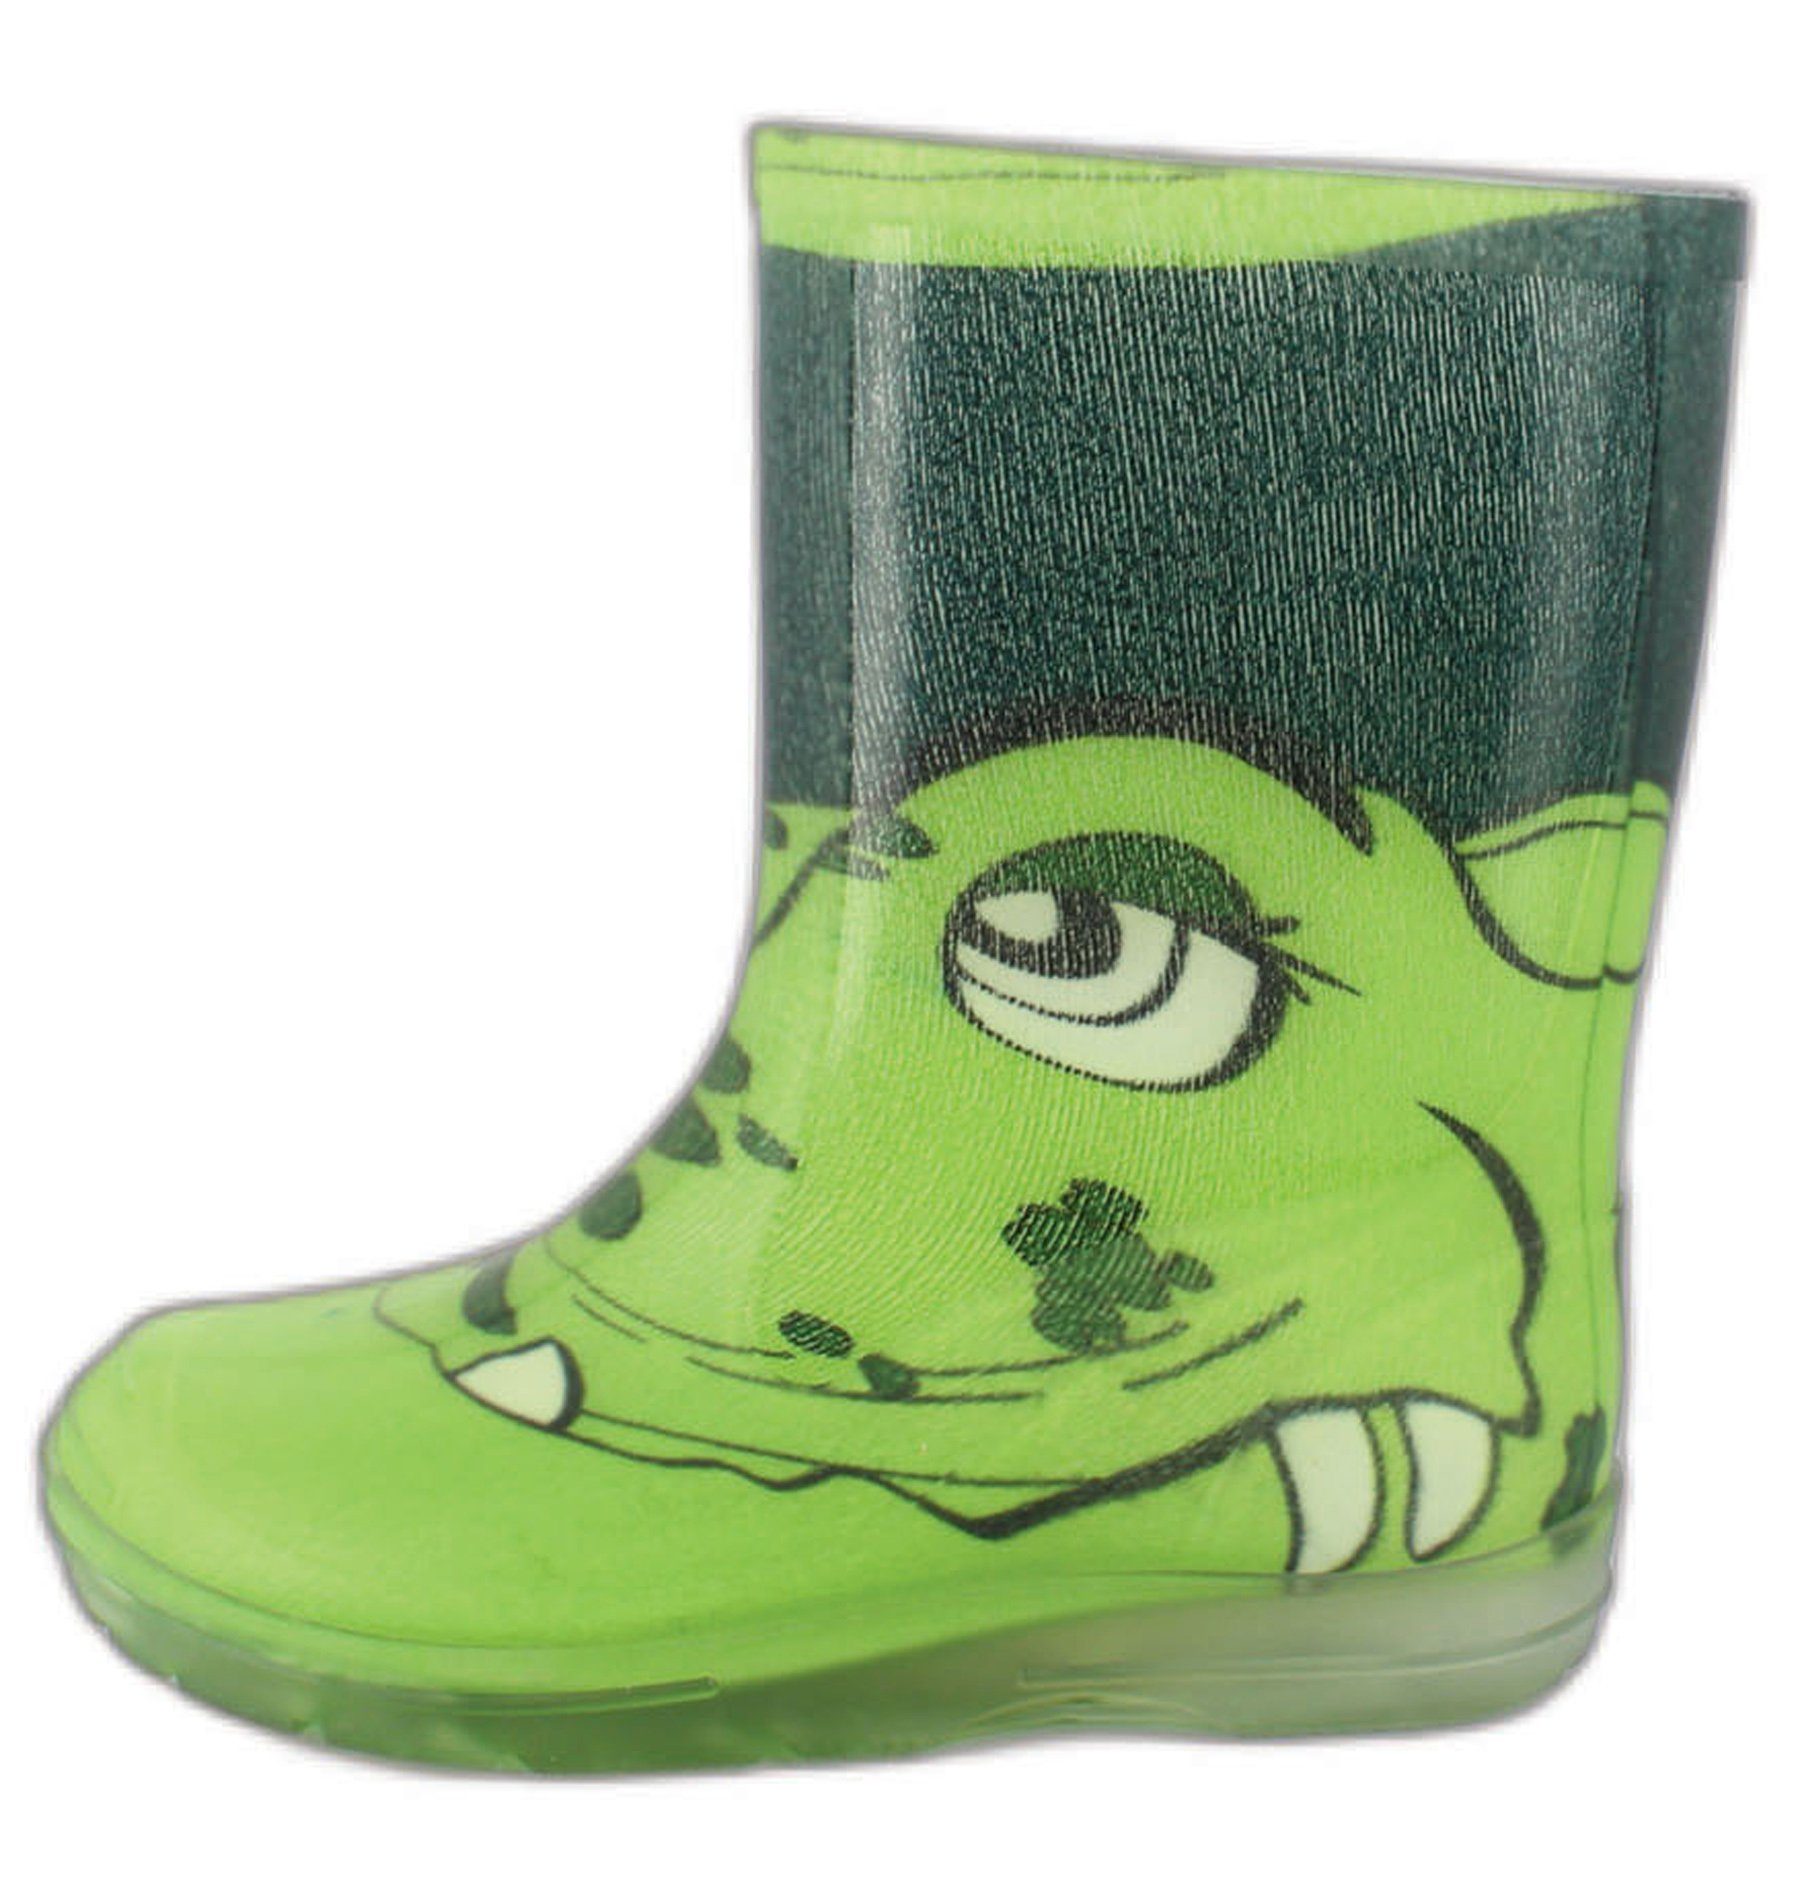 Beck Regenstiefel Croco Gummistiefel (für trockene Füße bei Regen und  Matschwetter) sehr robust, leichtes An- und Ausziehen, grüner Regenstiefel  für Mädchen und Jungs mit coolem Krokodil